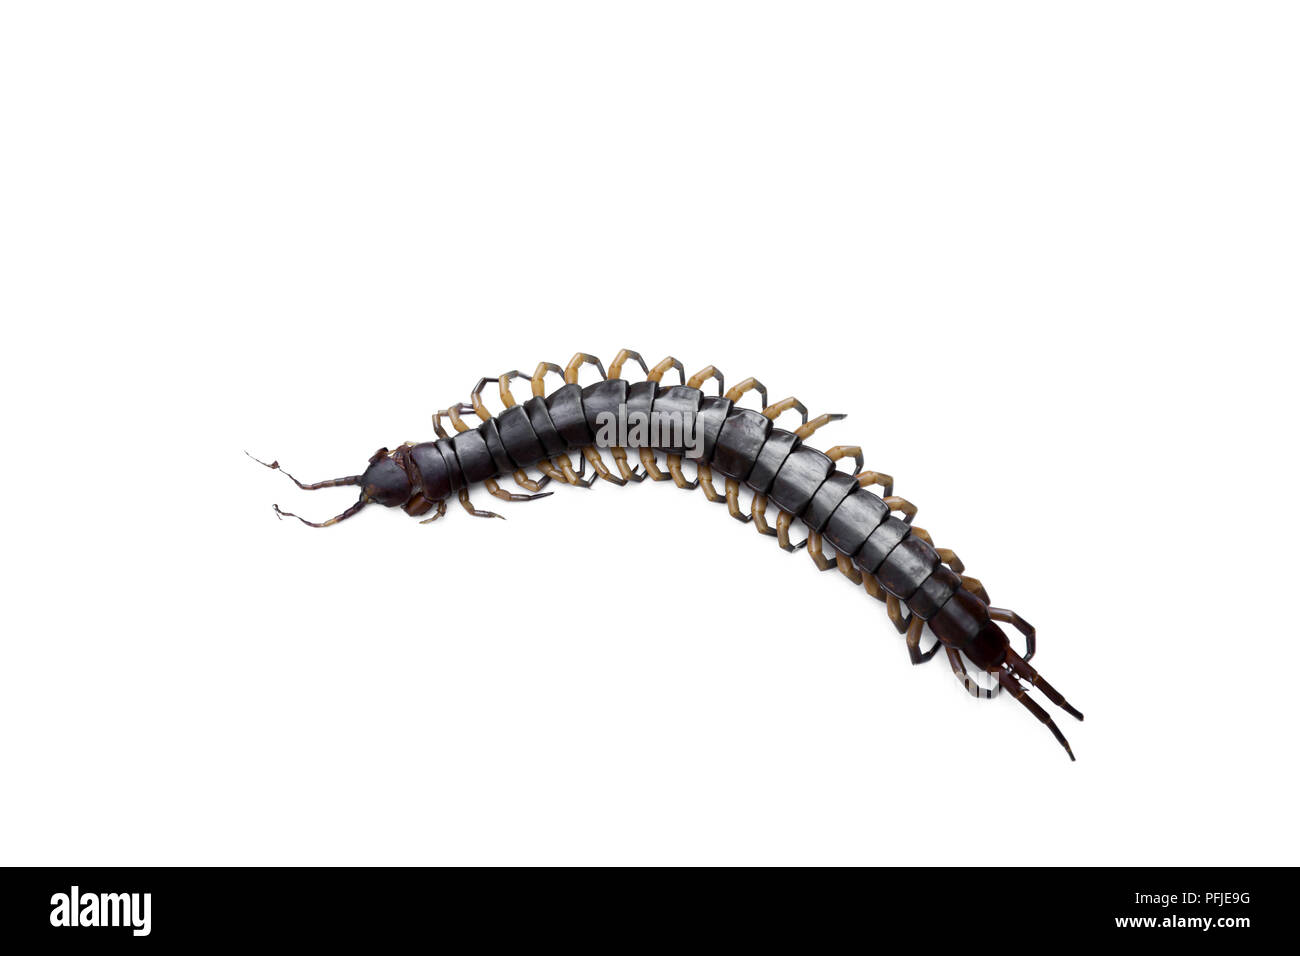 Morto centipede velenosi isolati su sfondo bianco Foto Stock